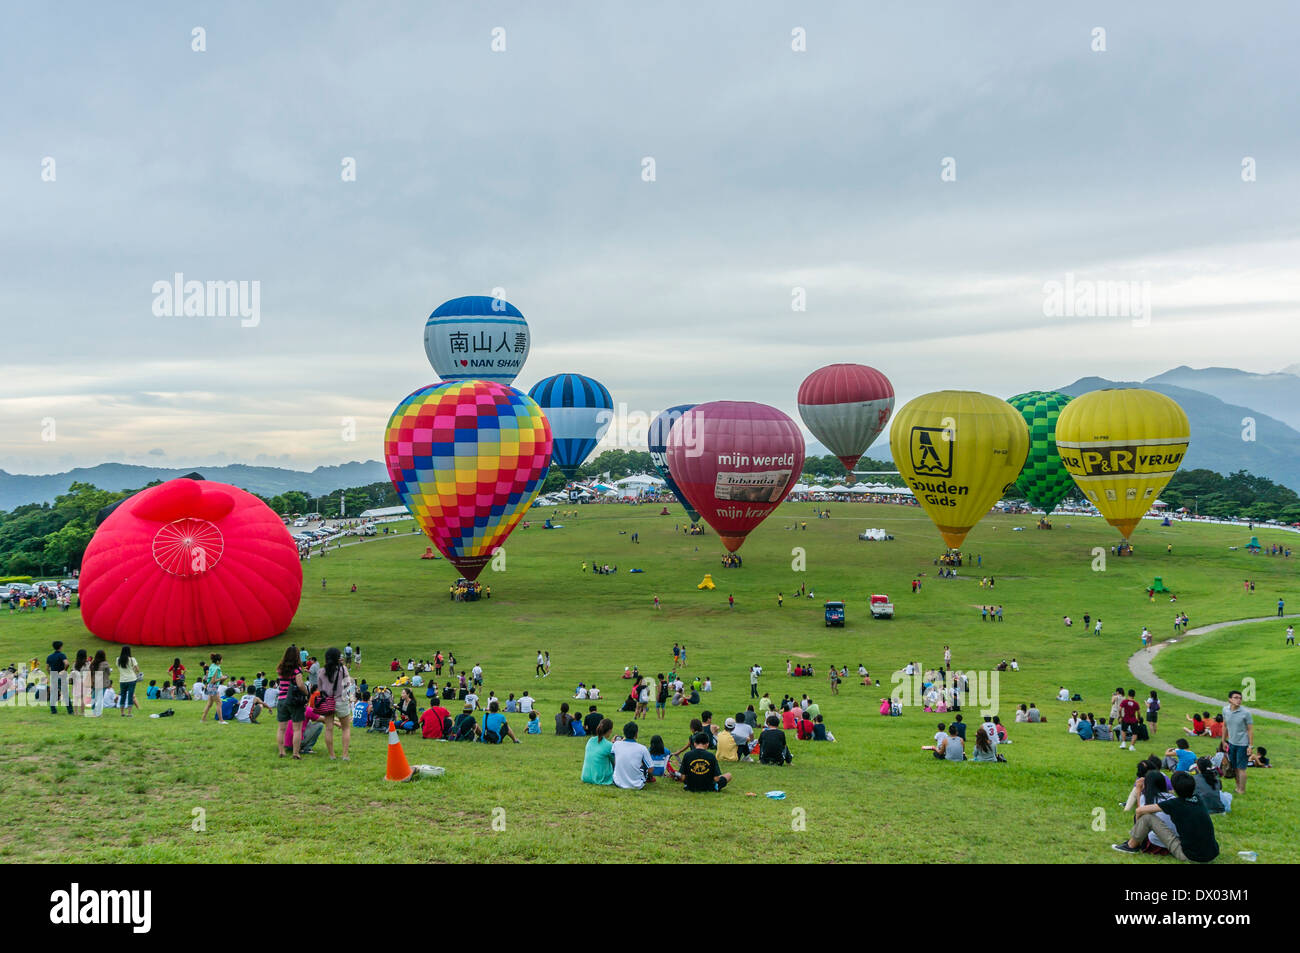 International Hot Air Balloon Festival, Taitung, Taiwan Stock Photo